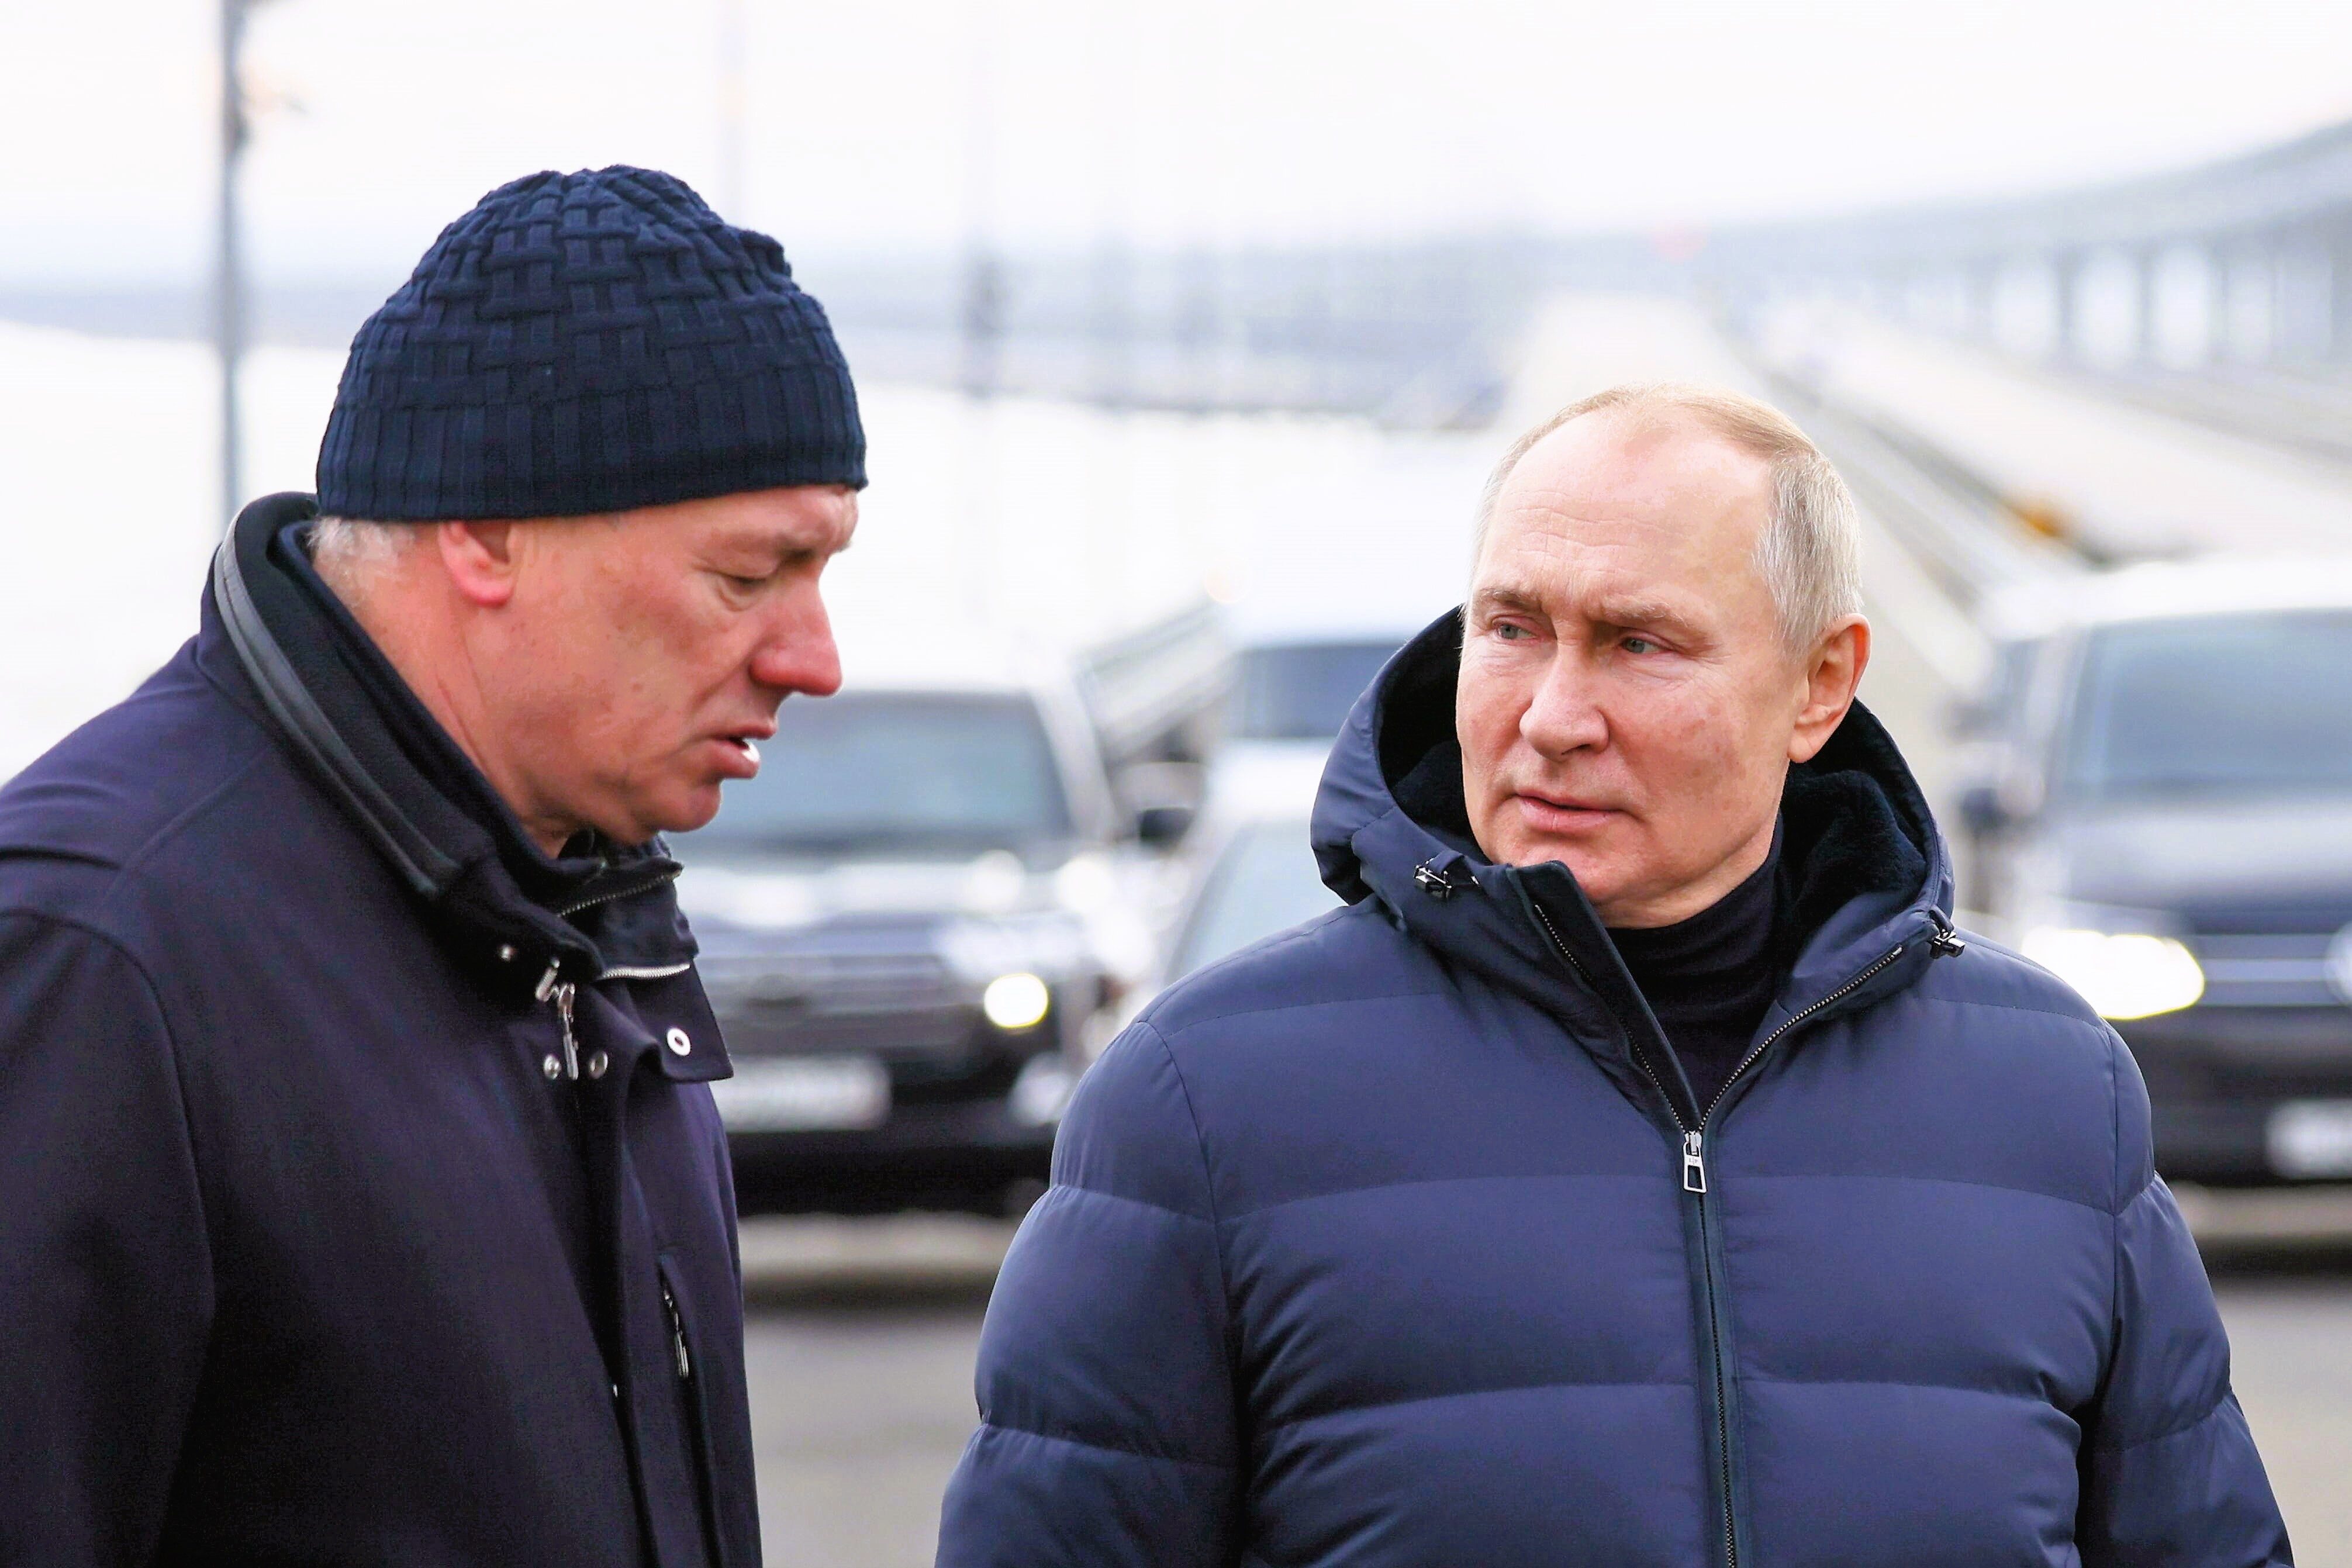 Putin zu krank zum regieren! Übergibt der Kreml-Despot nun etwa sein Amt? Wer wird Nachfolger?